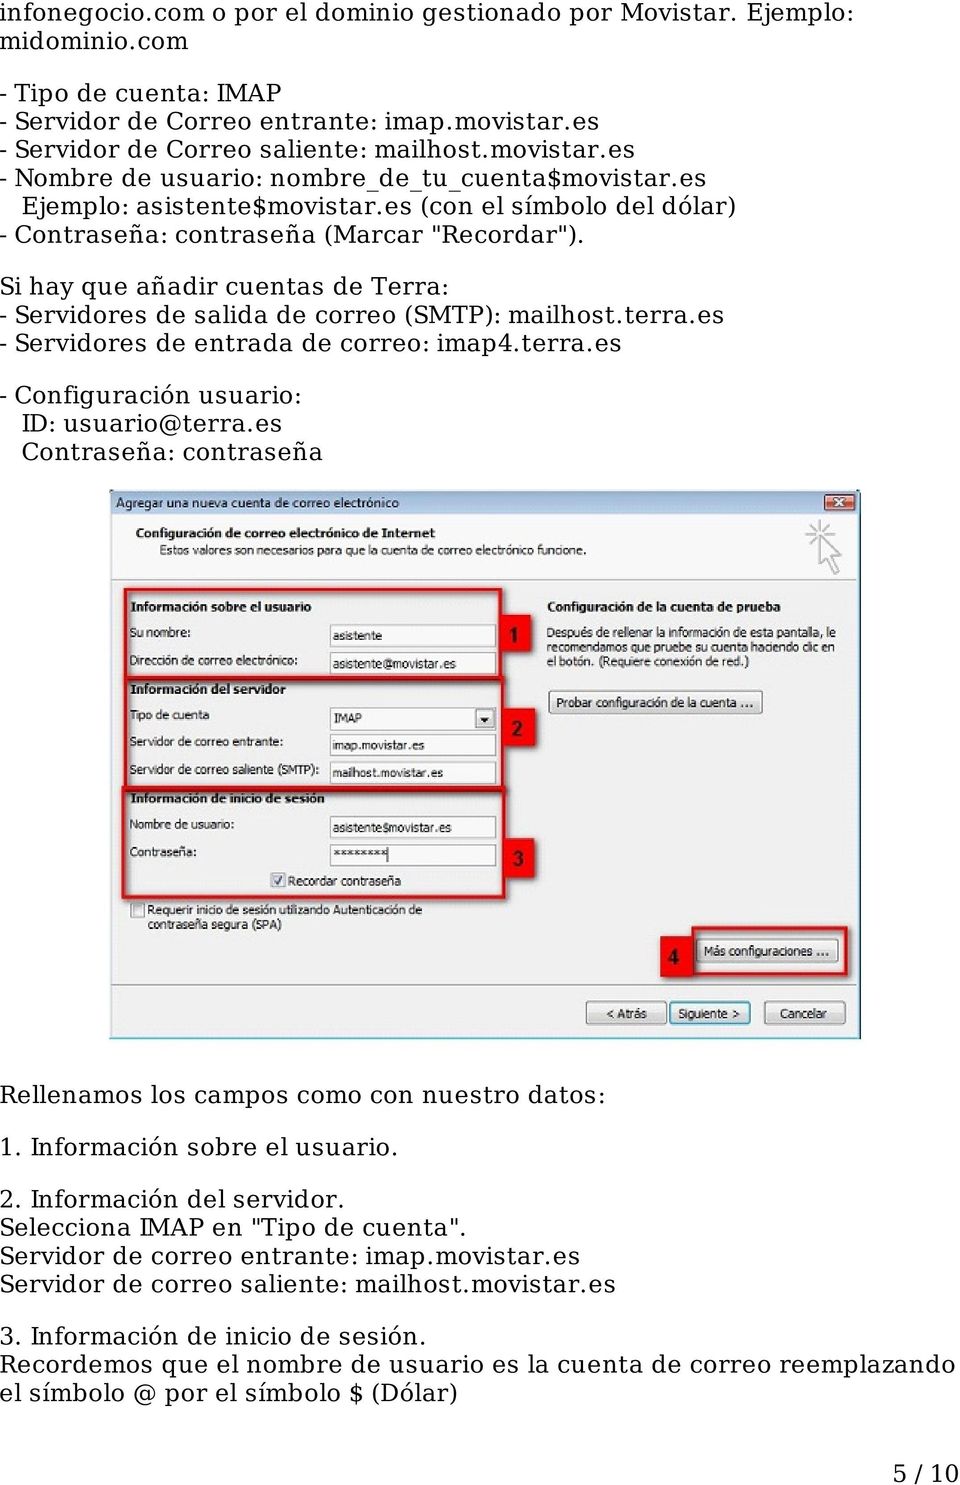 Si hay que añadir cuentas de Terra: - Servidores de salida de correo (SMTP): mailhost.terra.es - Servidores de entrada de correo: imap4.terra.es - Configuración usuario: ID: usuario@terra.